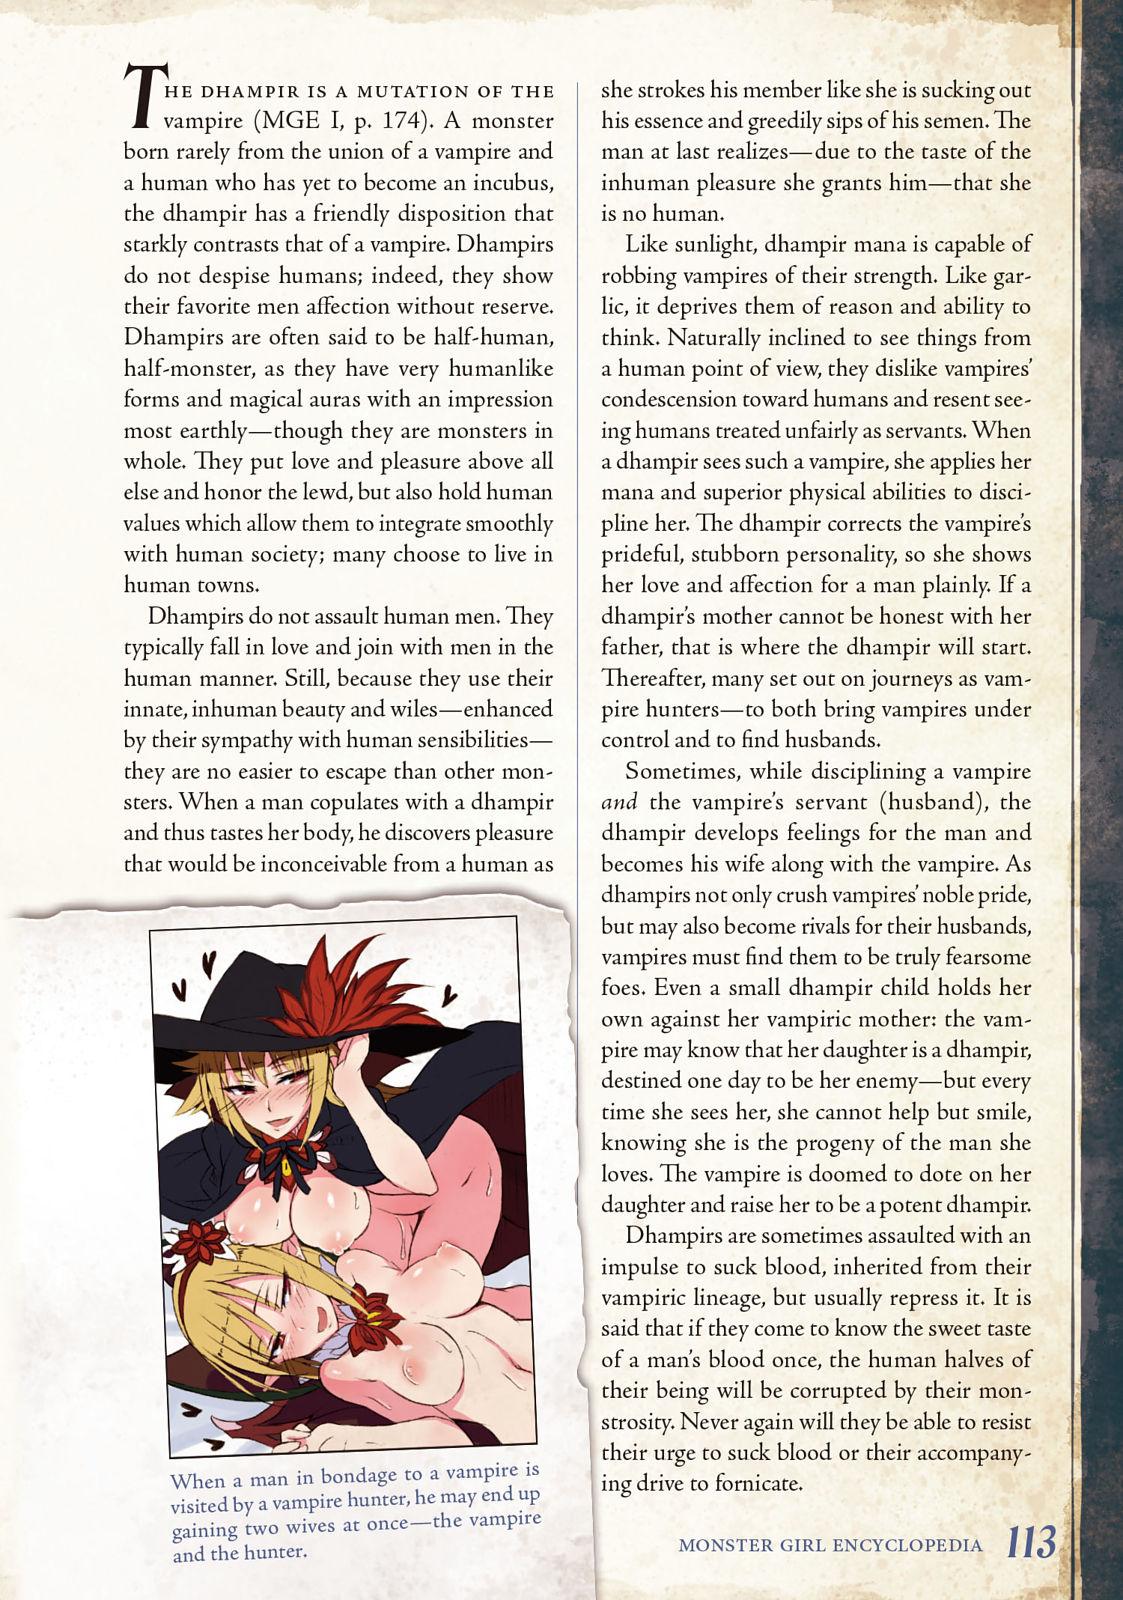 Monster Girl Encyclopedia Vol. 2 113